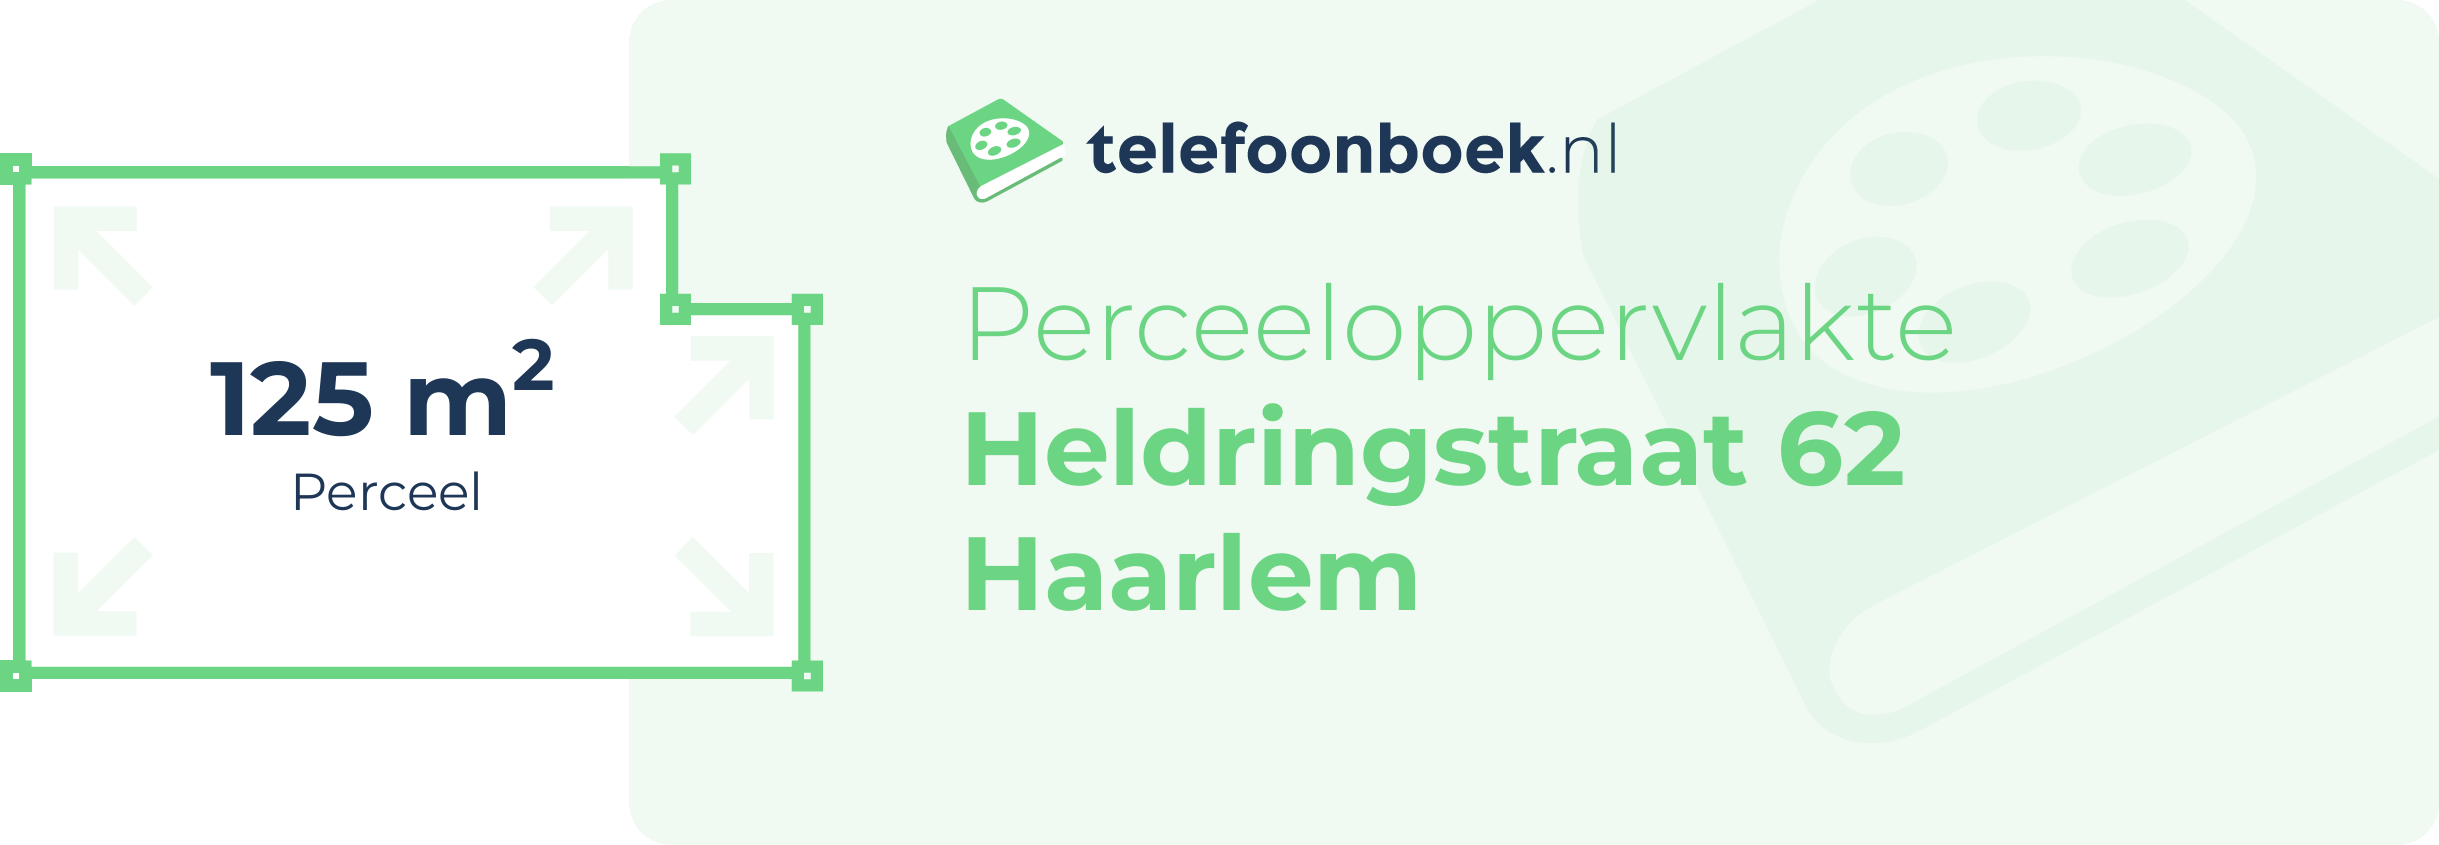 Perceeloppervlakte Heldringstraat 62 Haarlem